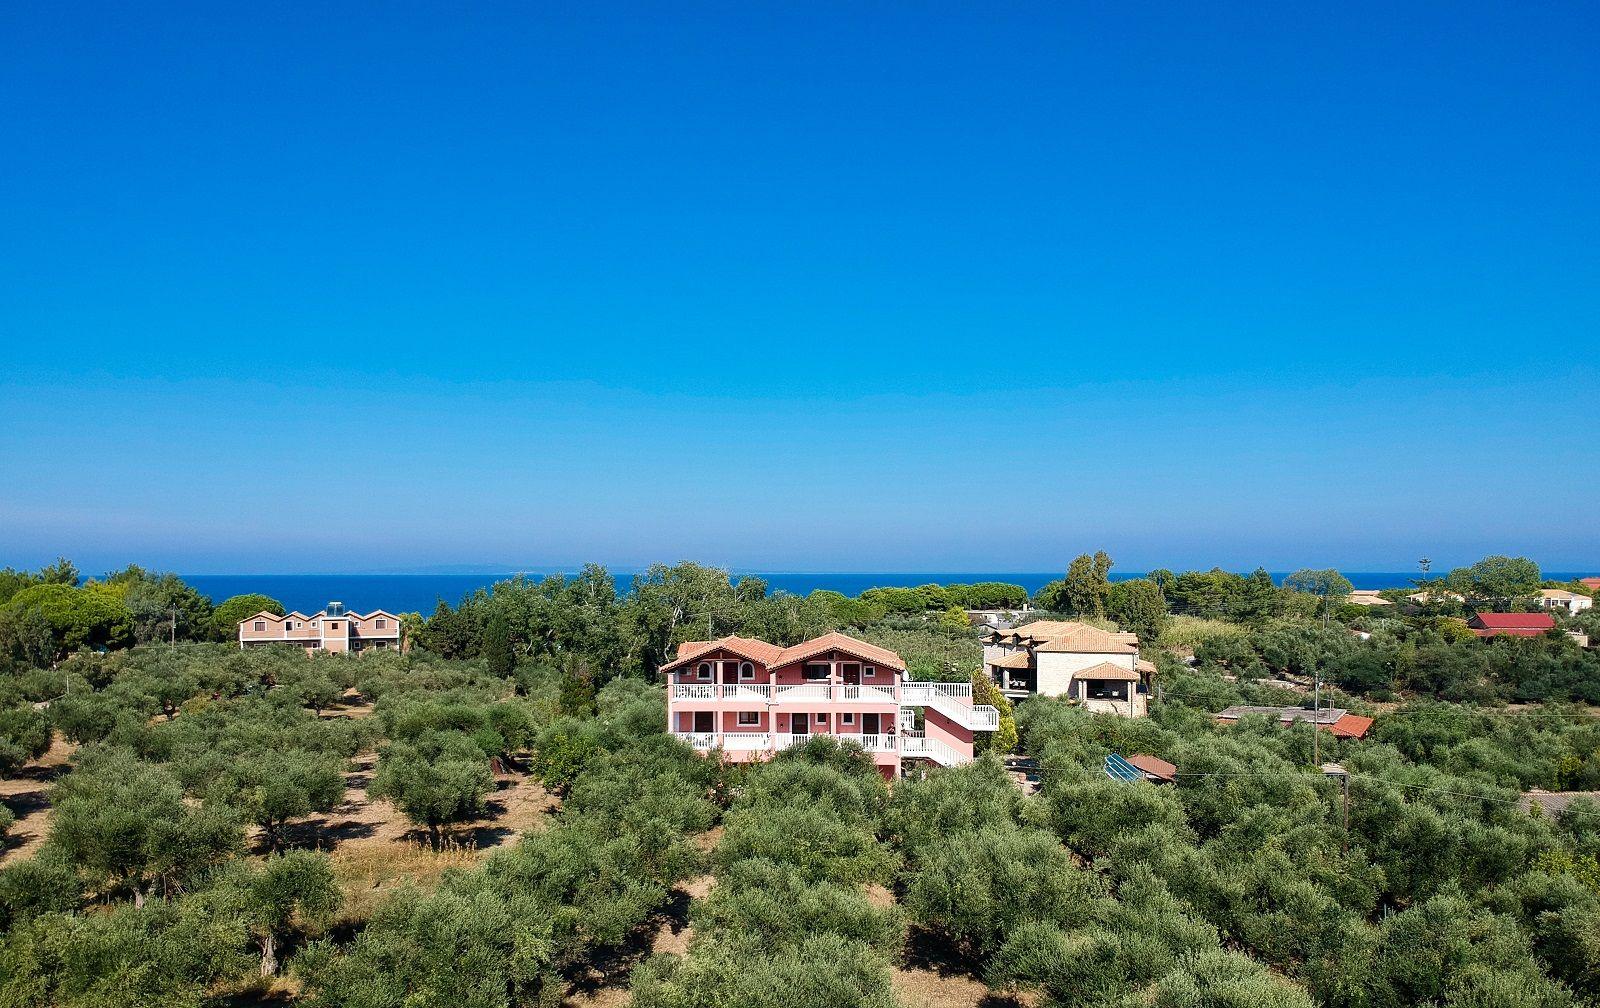 Ferienwohnung für 4 Personen ca. 65 m² i Ferienwohnung in Griechenland